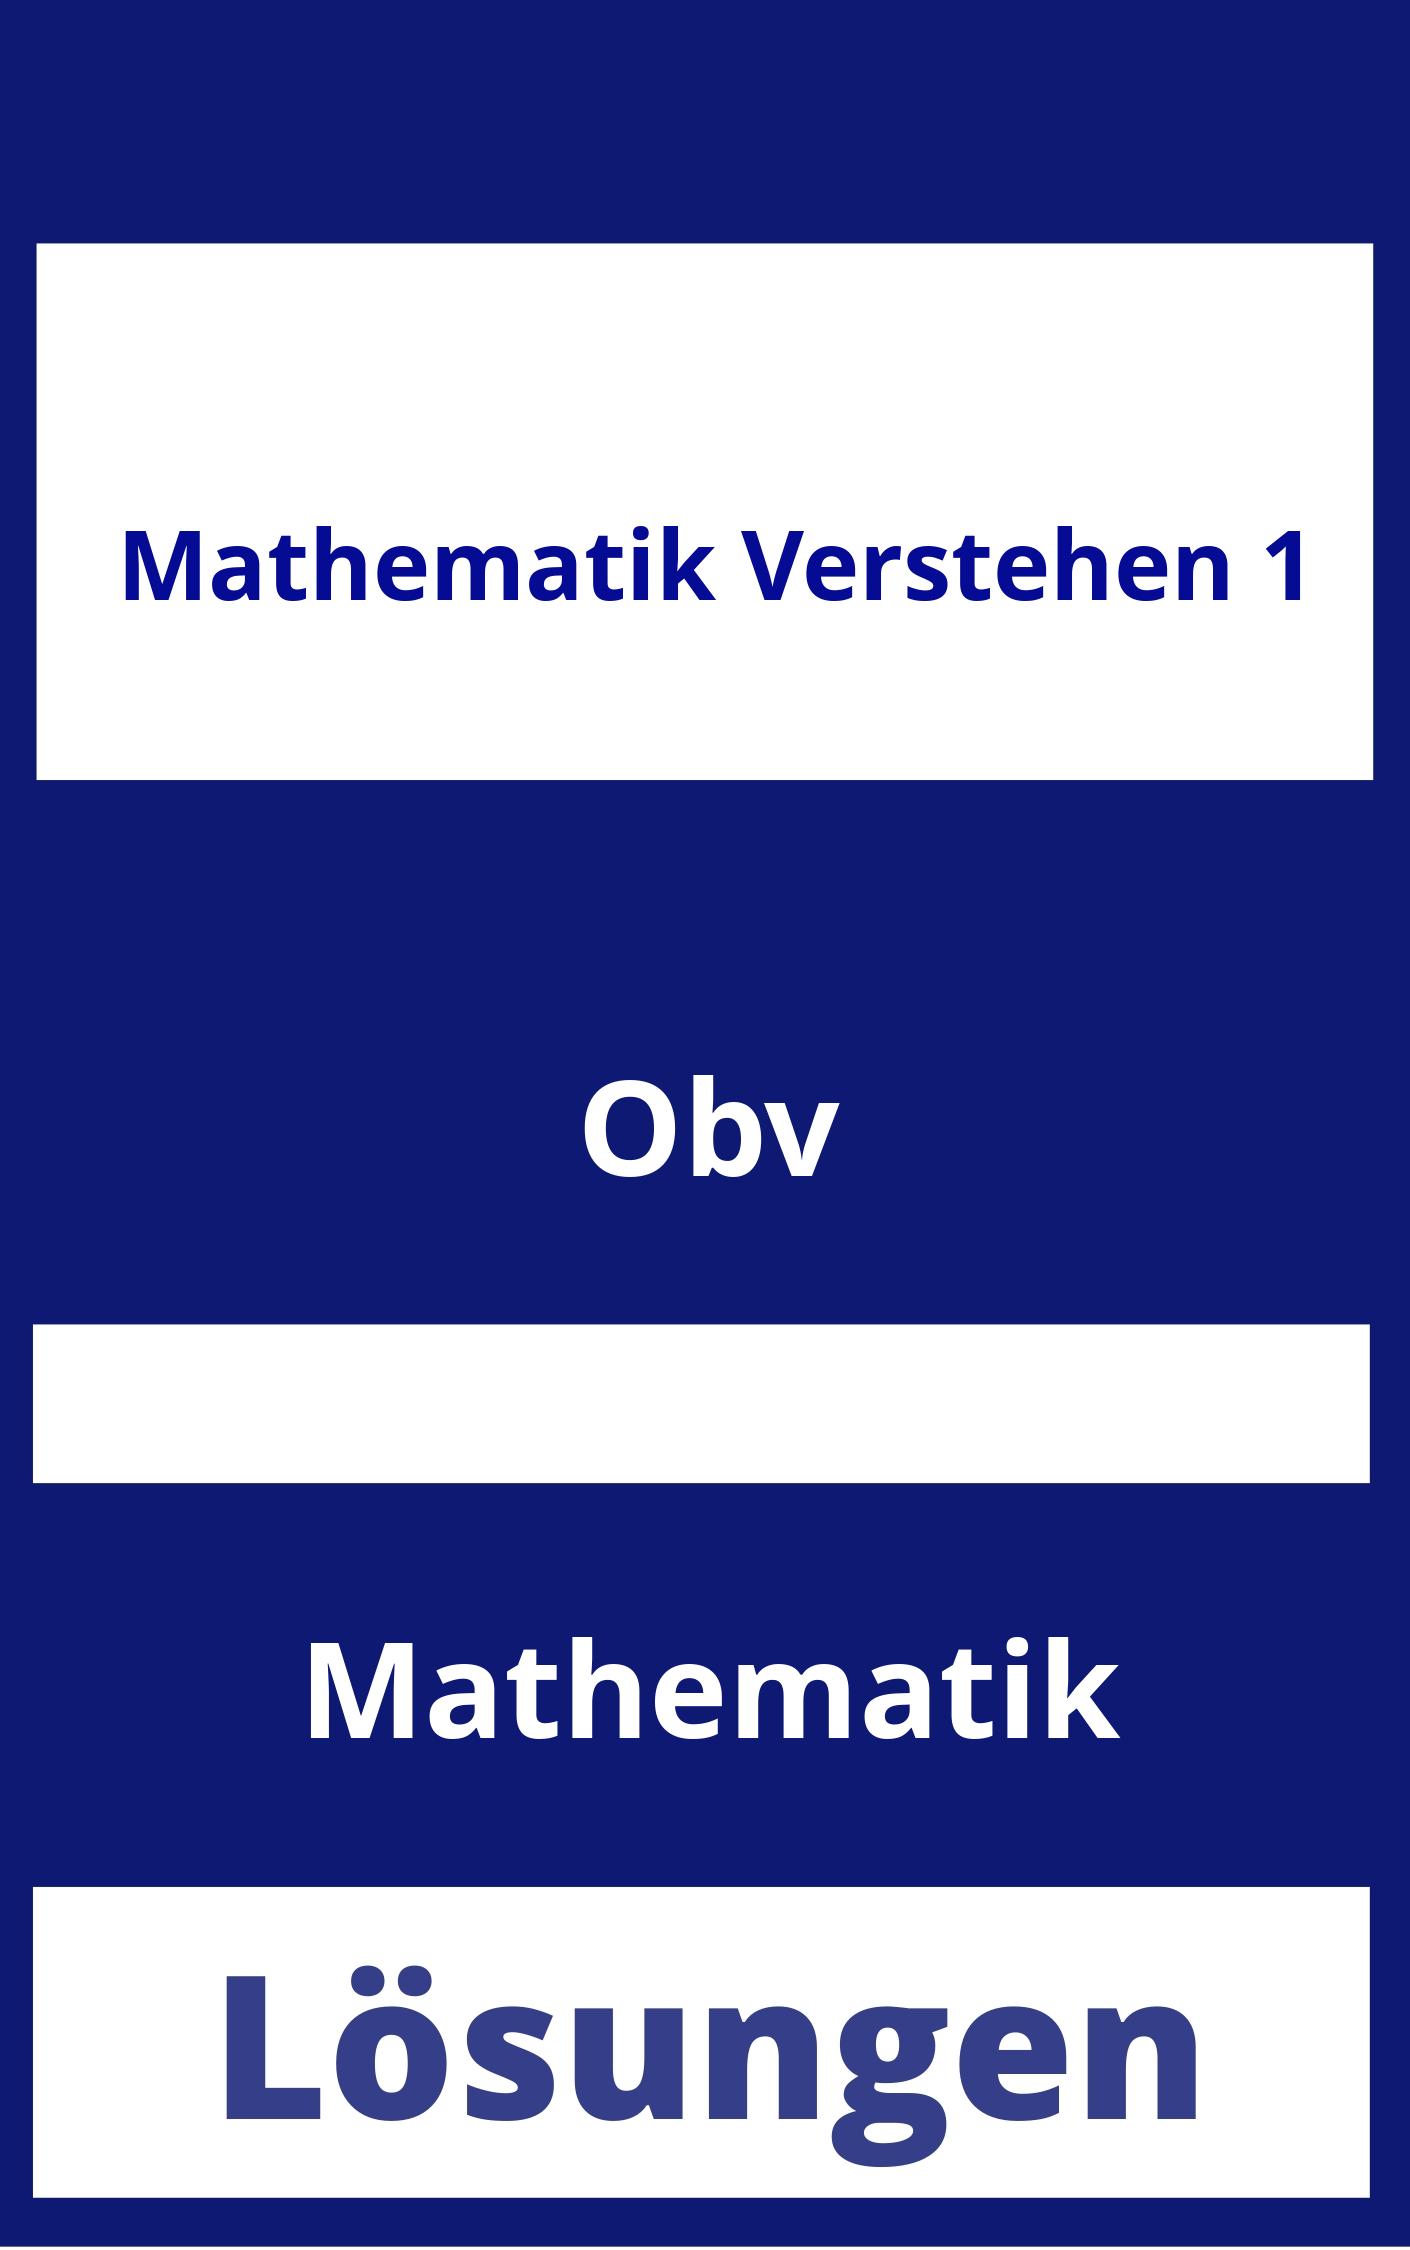 Mathematik Verstehen 1 Lösungen PDF